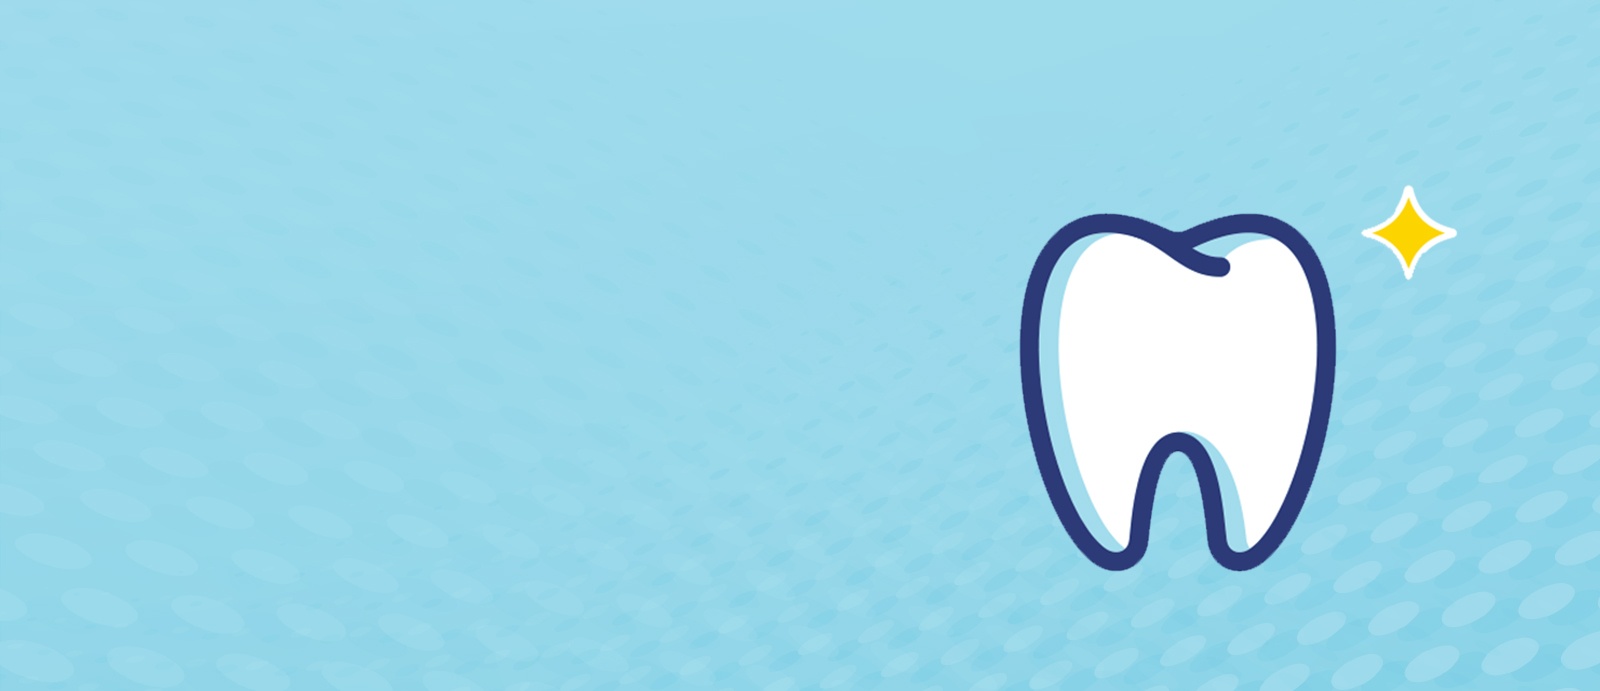 West Villages Dental Care Your Trusted Oral Health Partner